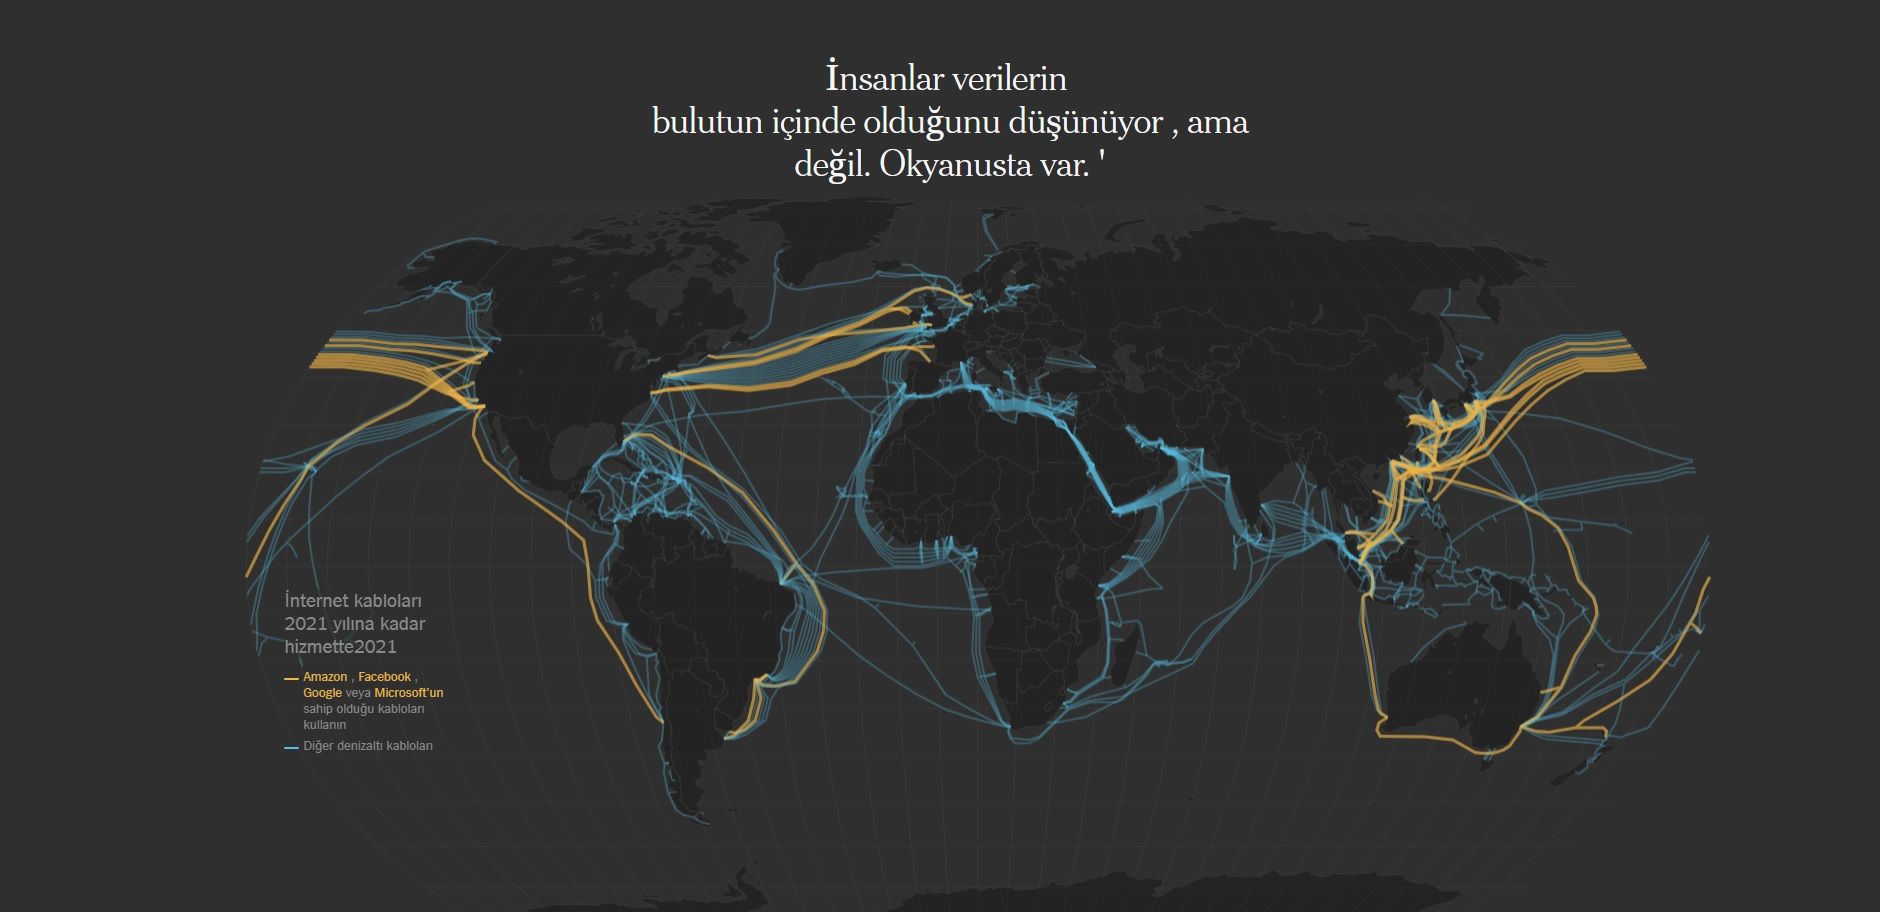 Karadeniz'den yeni optik internet hattı geçiriliyor | Technopat Sosyal